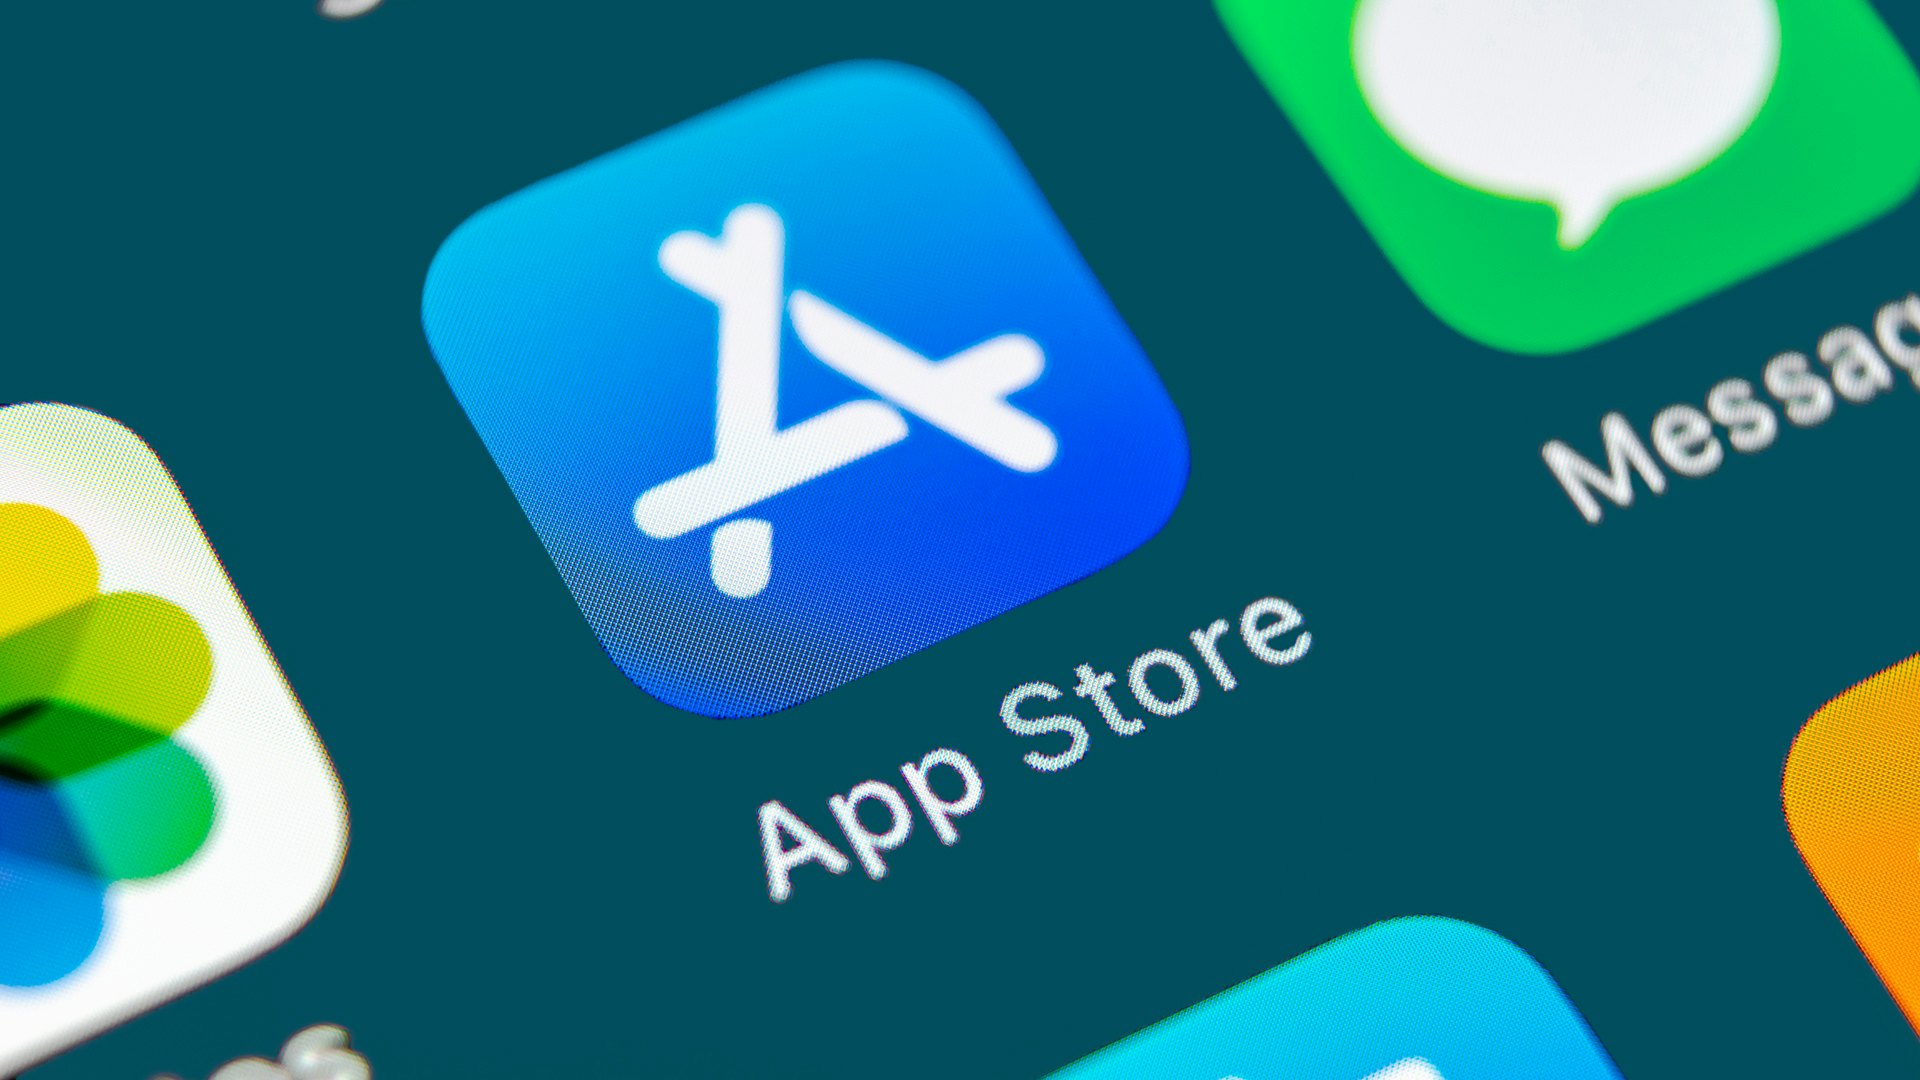 App store icon